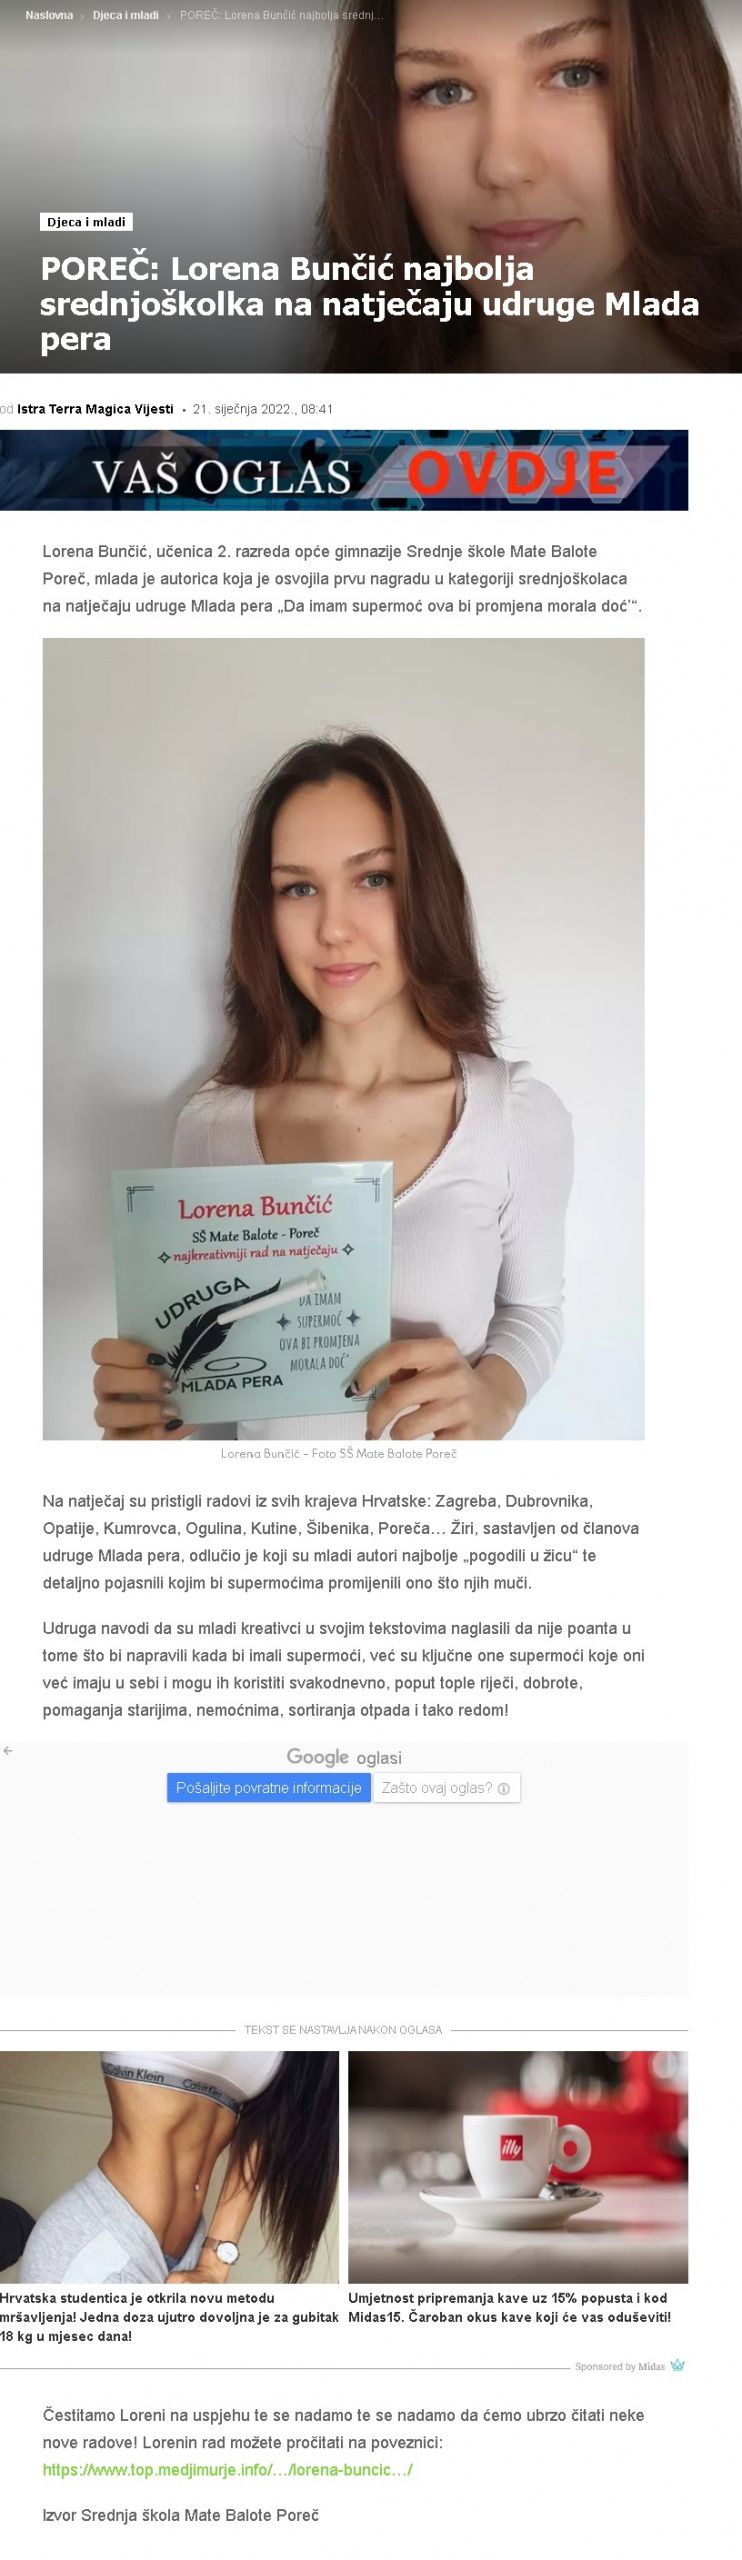 IstraTerraMagica: POREČ: Lorena Bunčić najbolja srednjoškolka na natječaju udruge Mlada pera